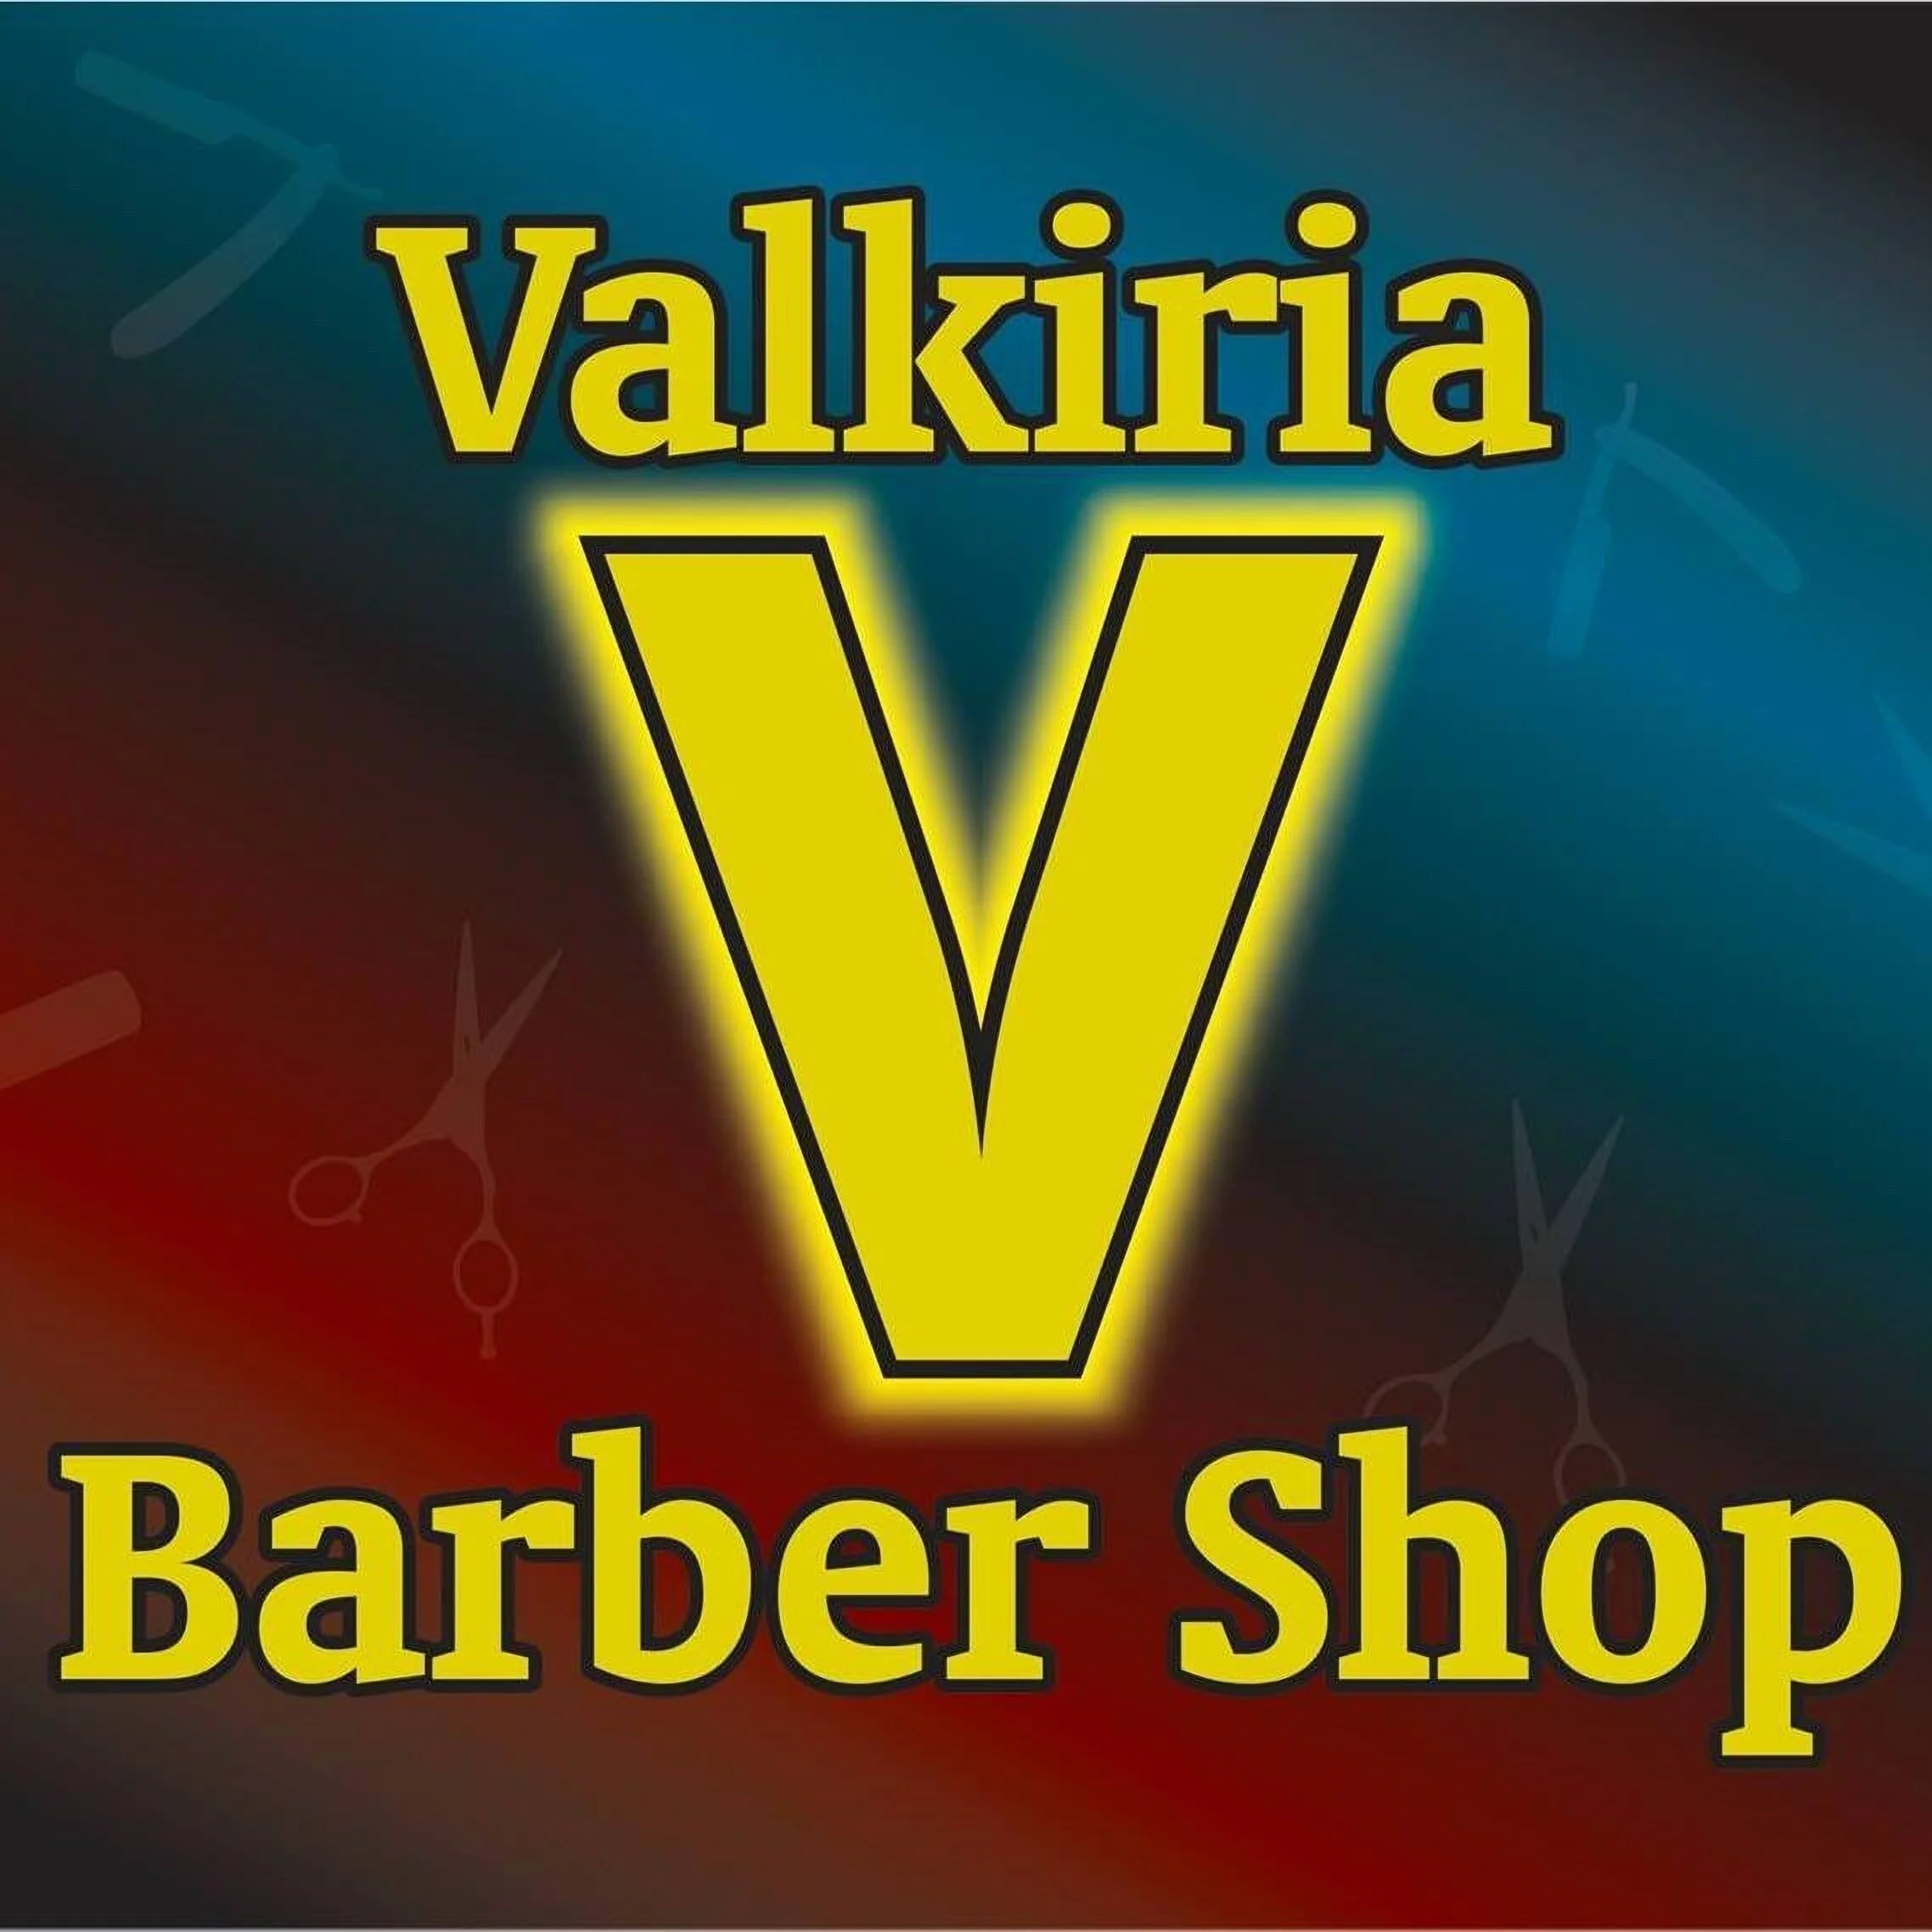 Barbería-valkiria-barber-shop-8593